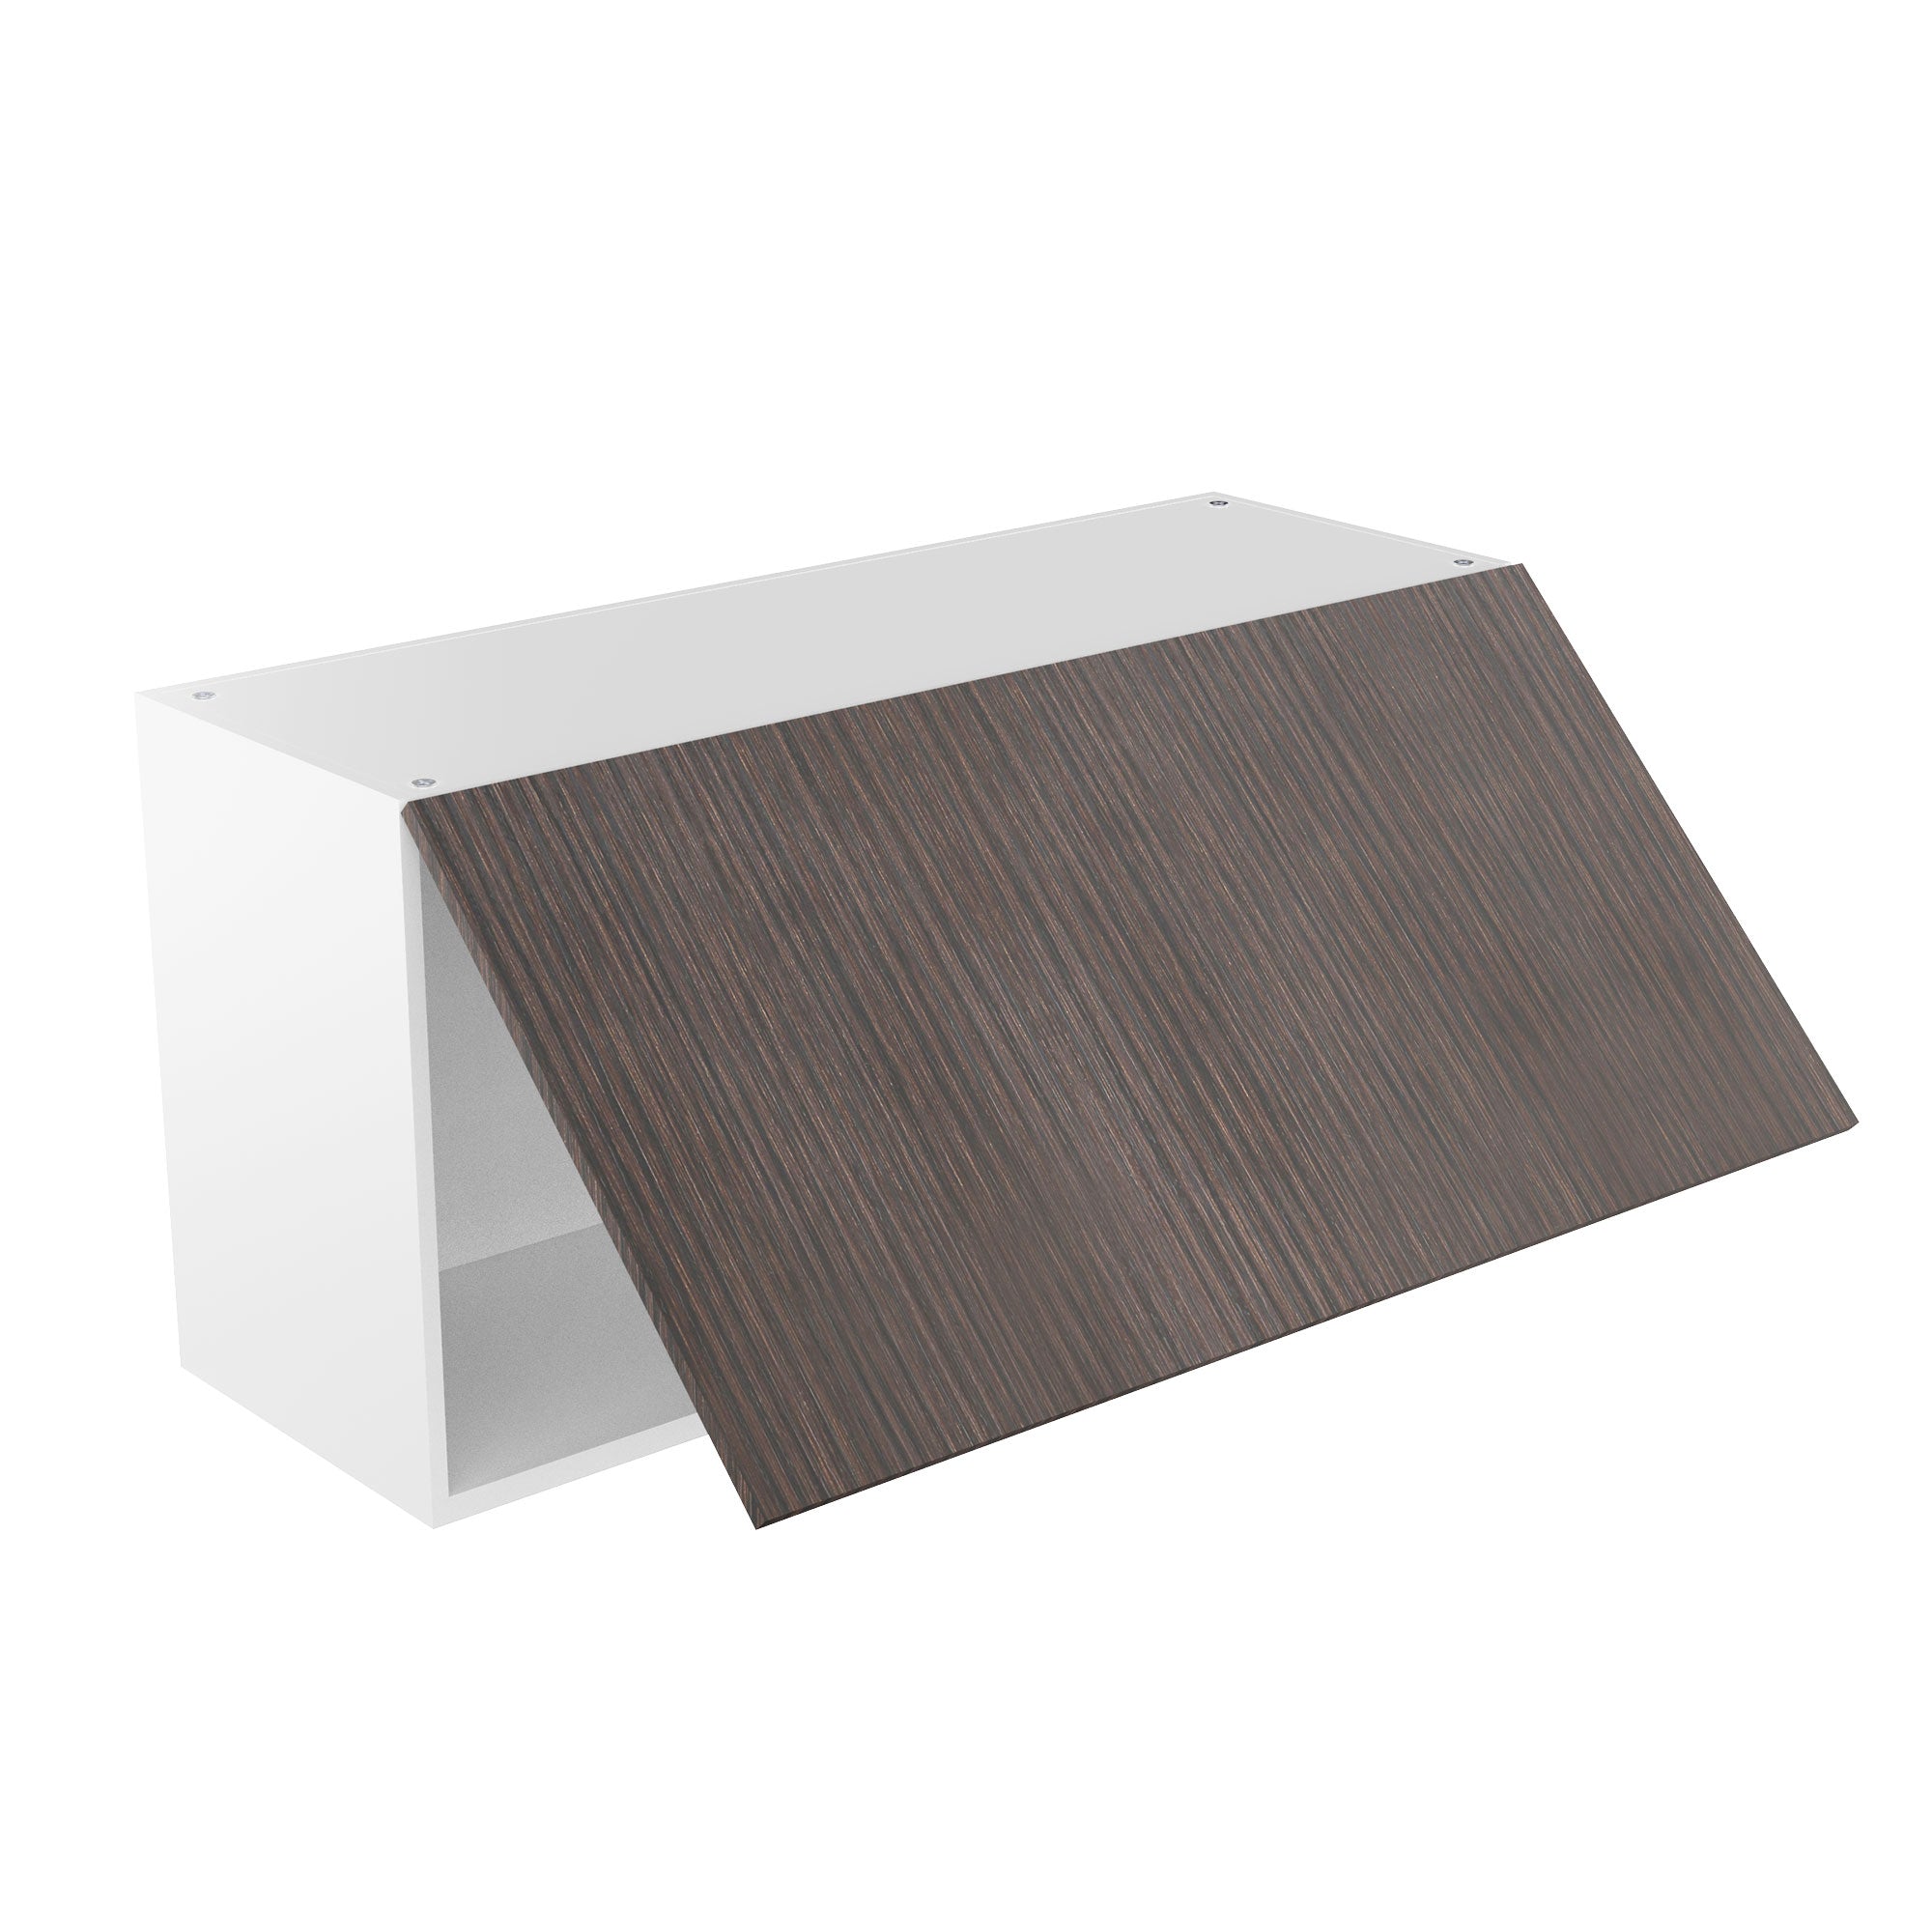 RTA - Brown Oak - Horizontal Door Wall Cabinets | 36"W x 18"H x 12"D